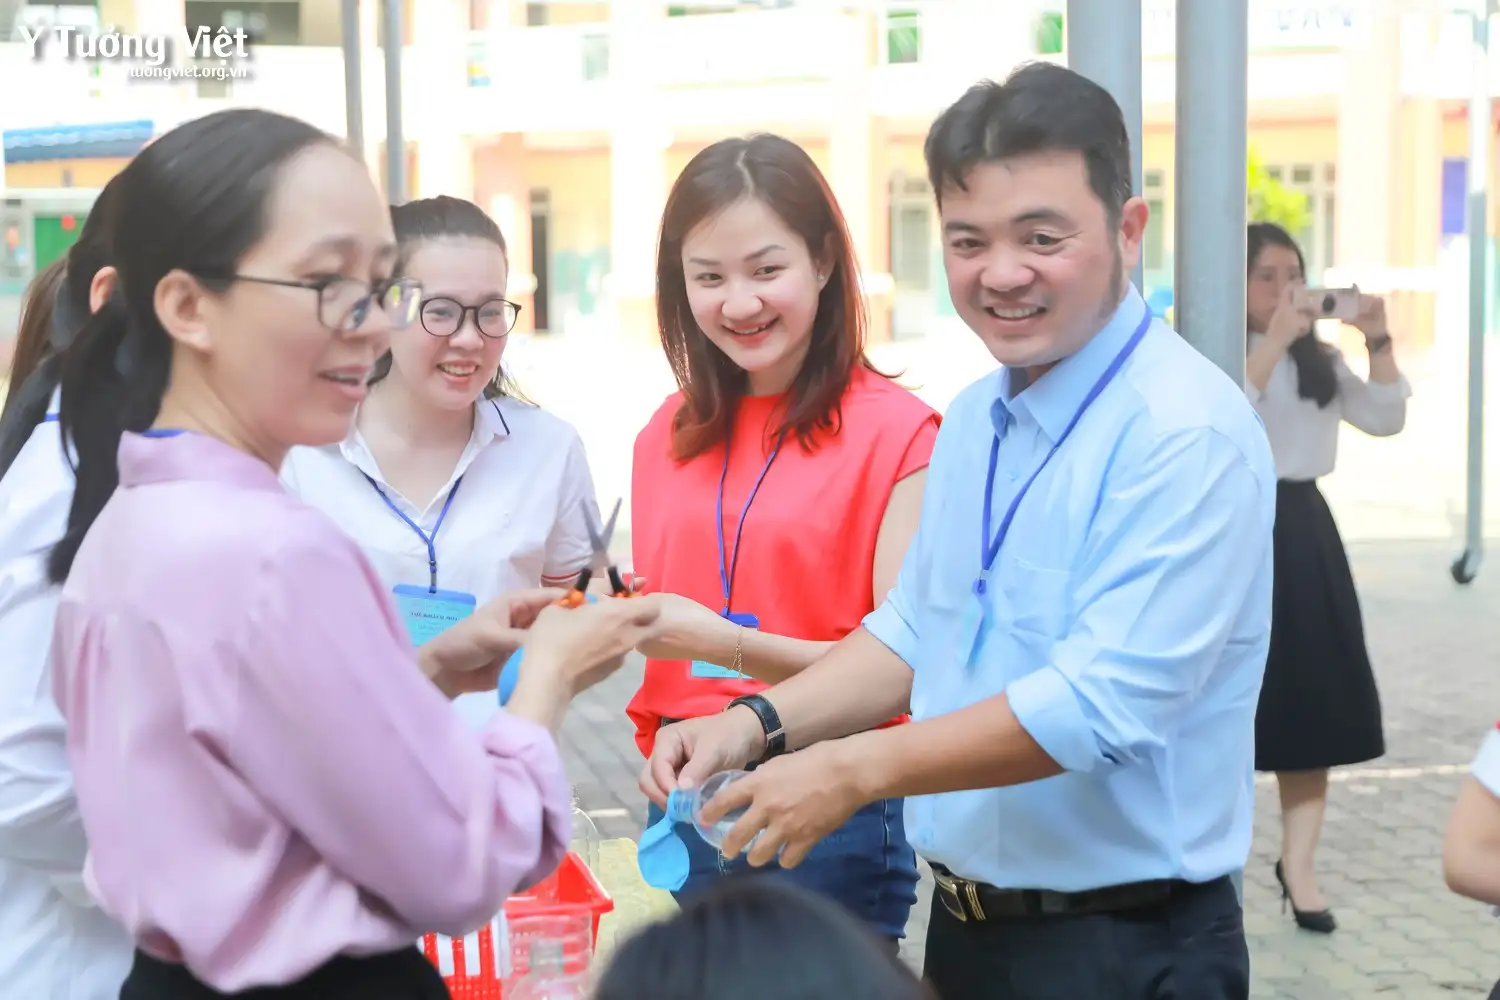 Ngày hội “Ba mẹ đồng hành cùng con” ở trường TH An Phong | Chuyên đề: Lớp học mở STEM – Thiết kế kèn cổ vũ